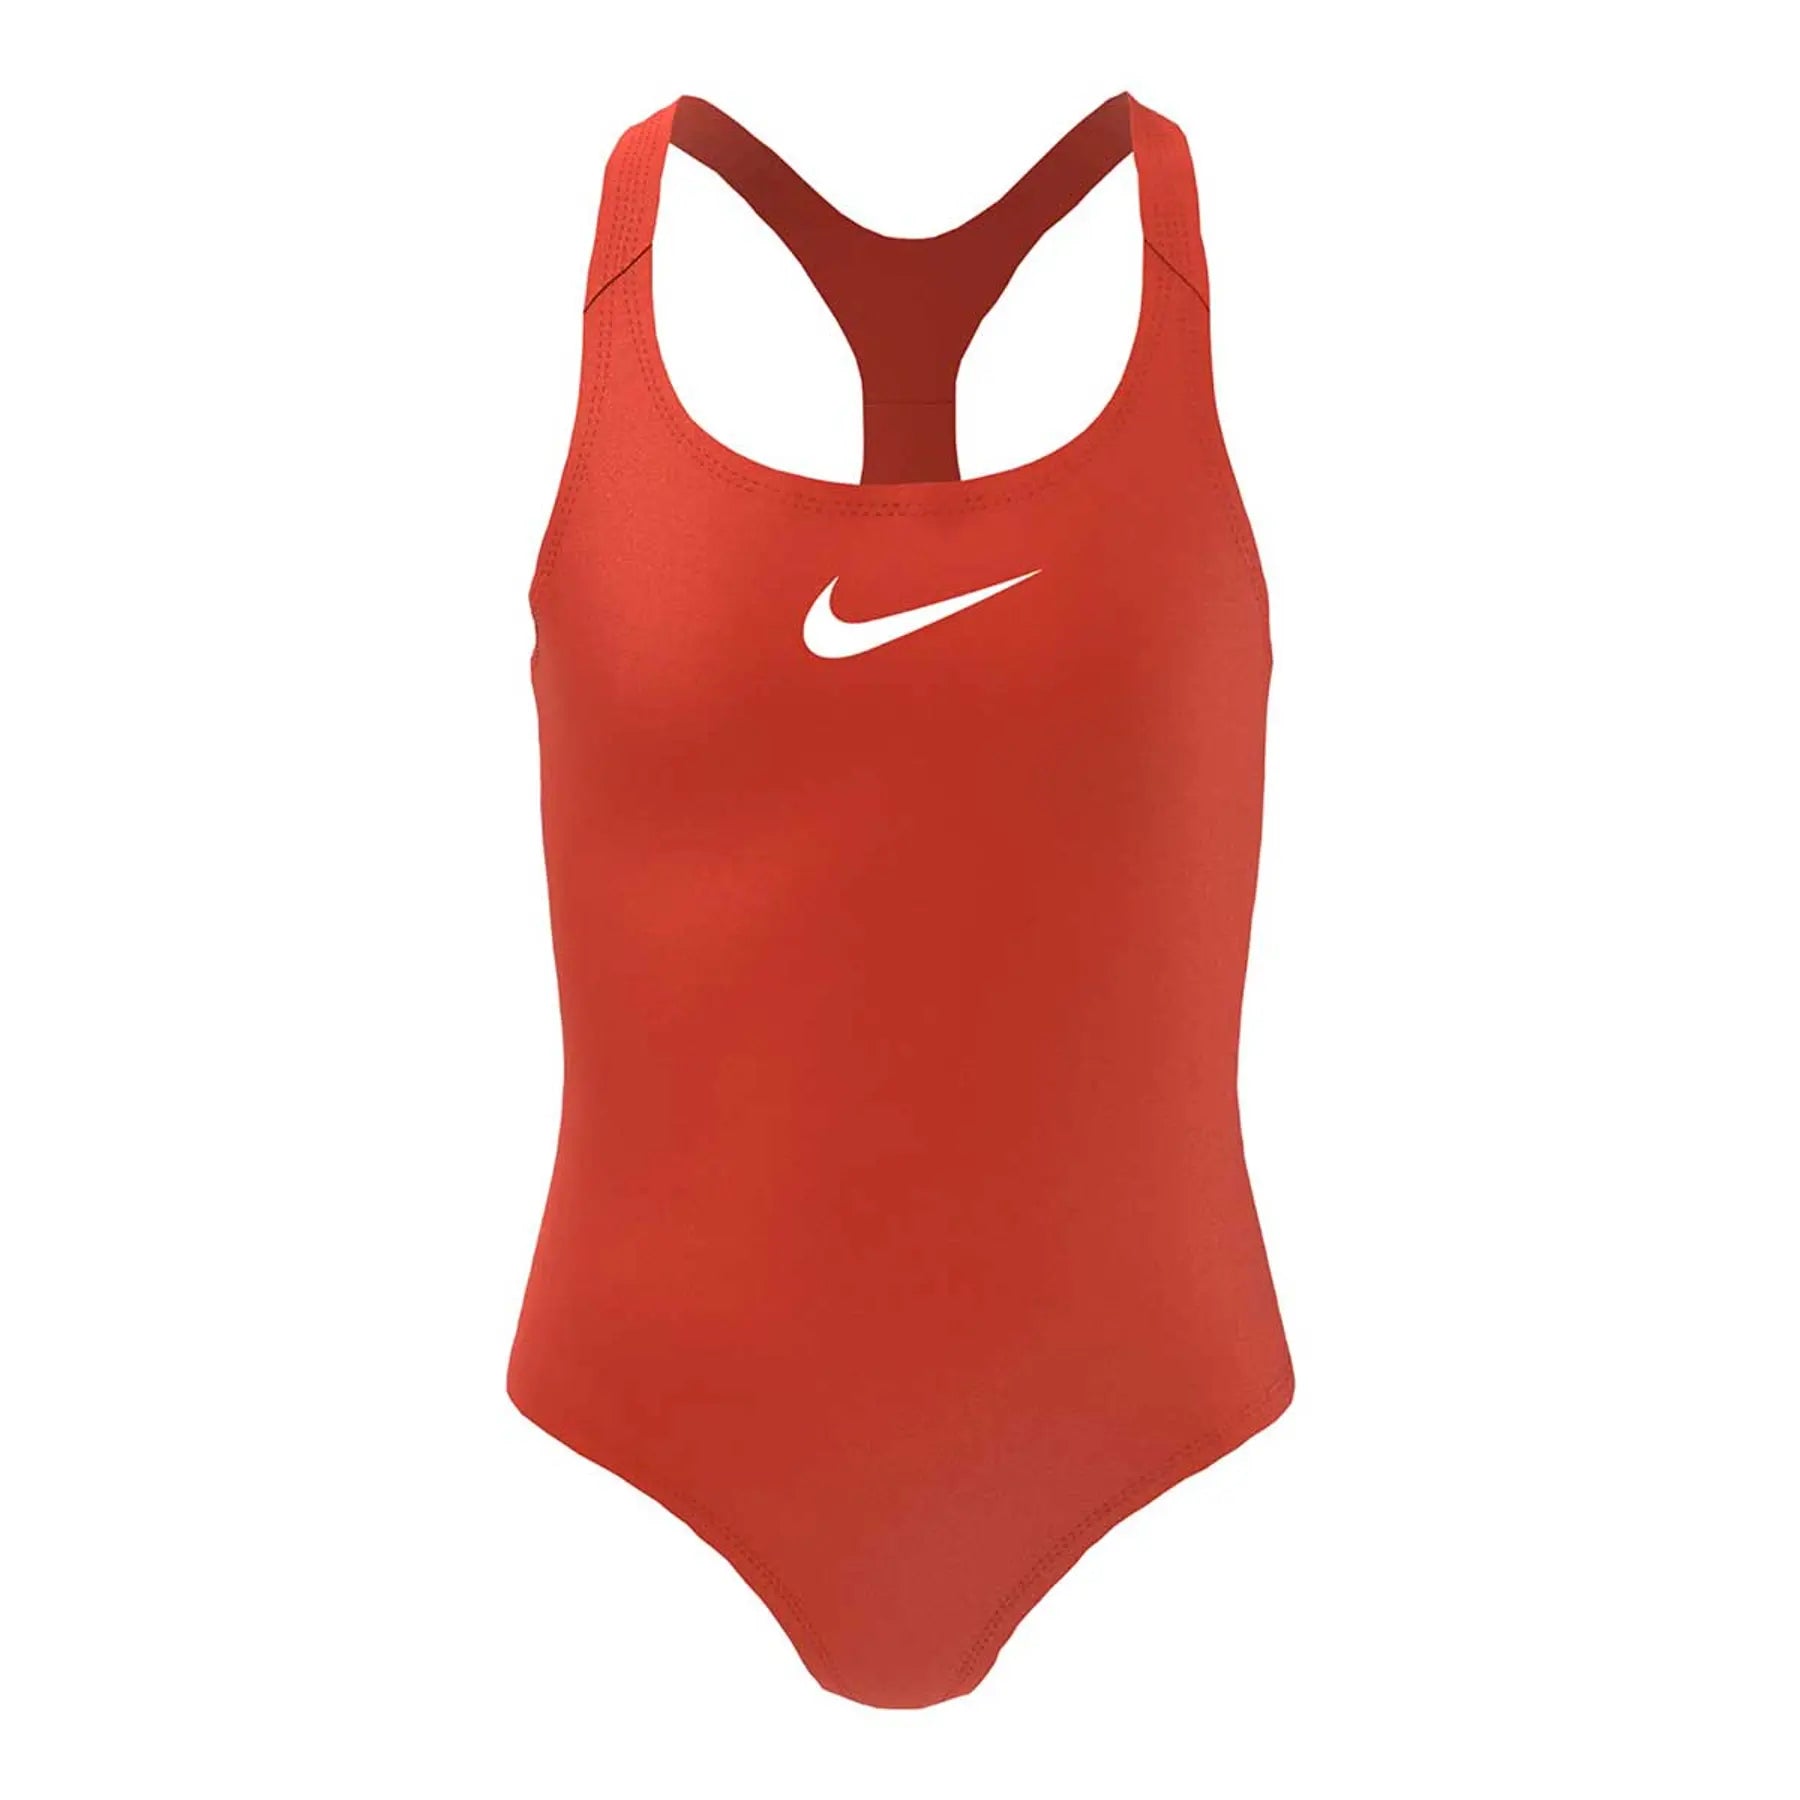 Nike Swim, Raceback Badeanzug, Damen, rot